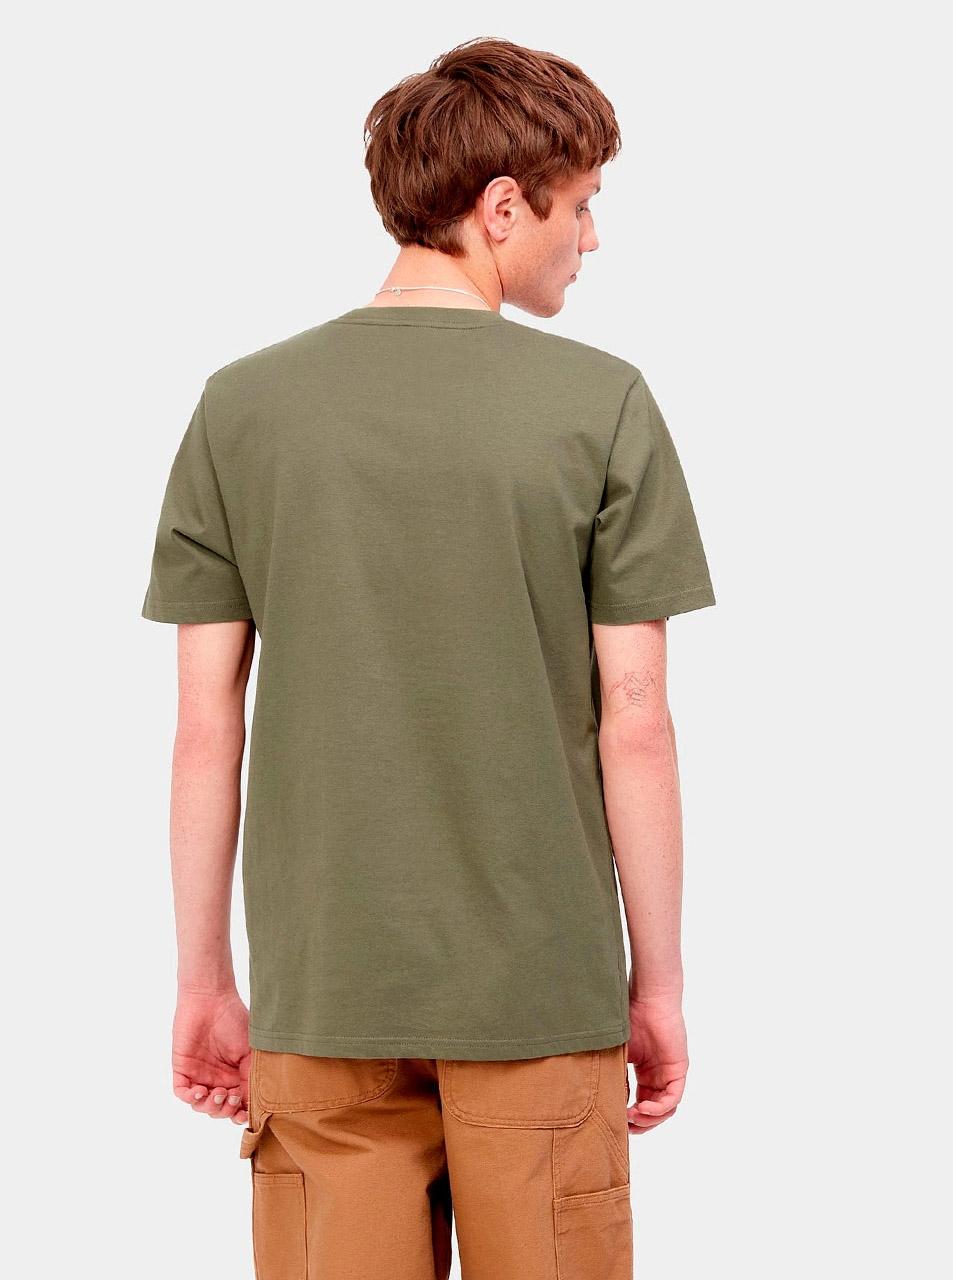 Camiseta CARHARTT POCKET - Seaweed